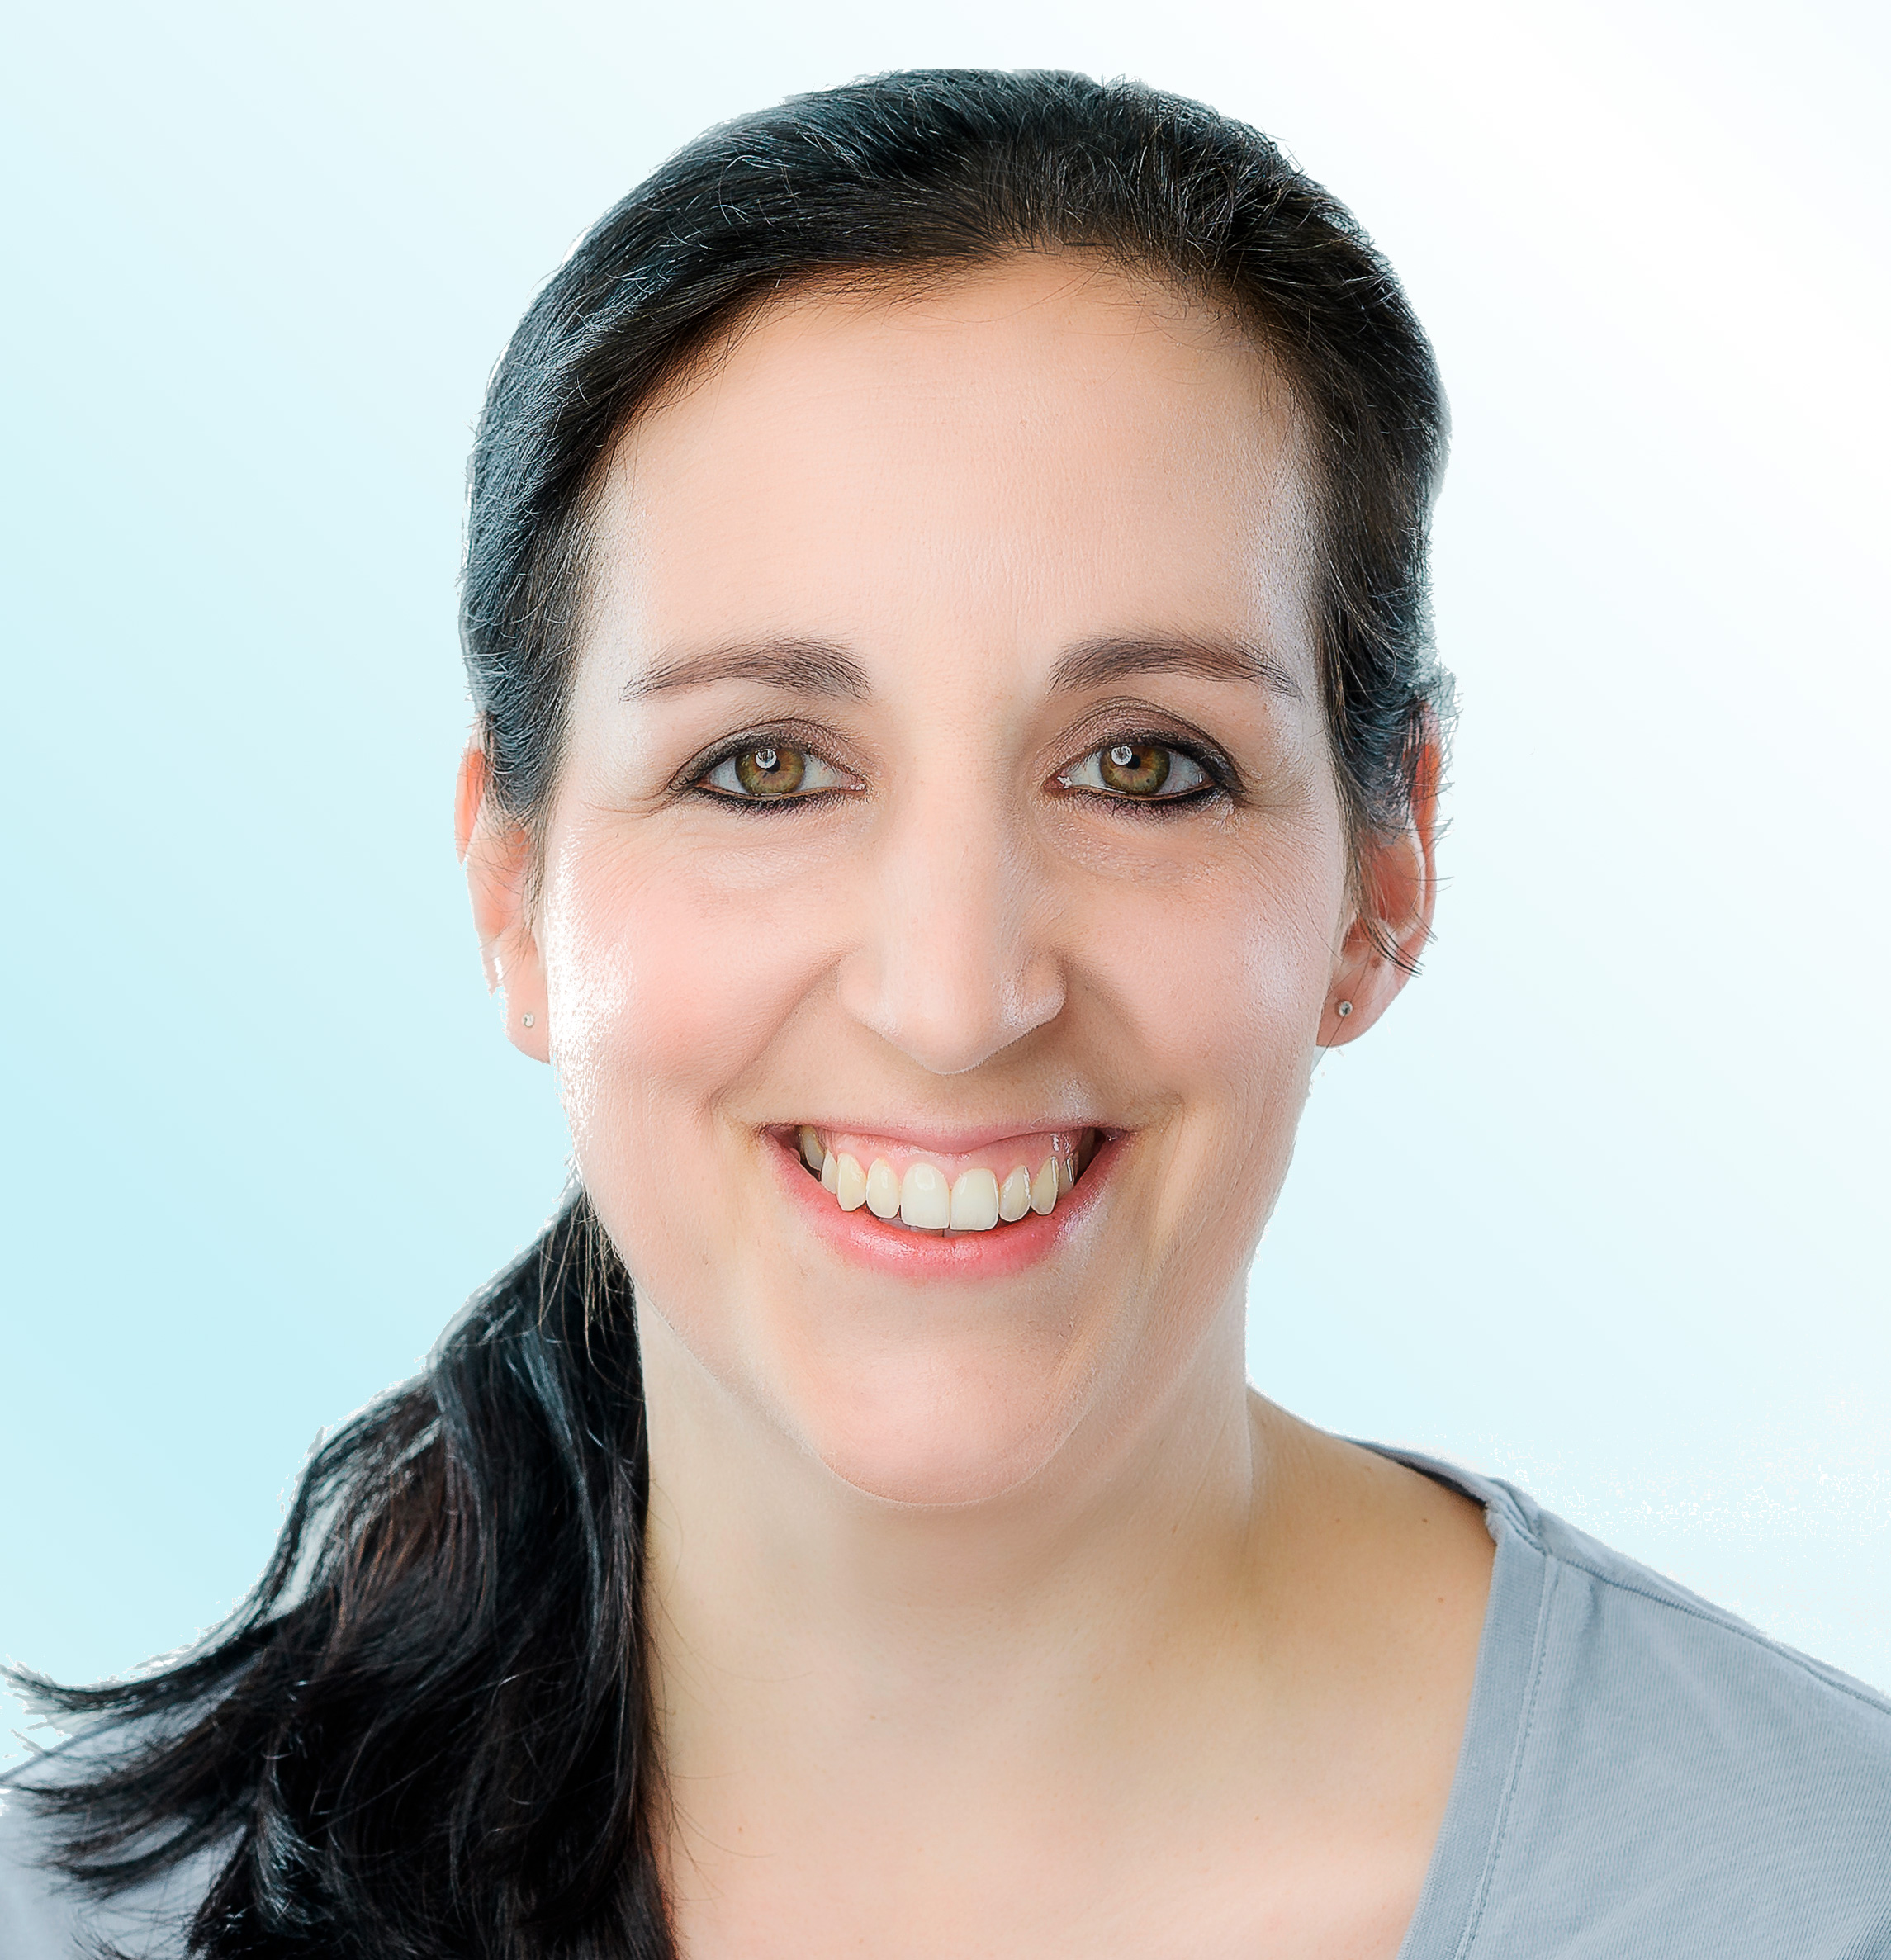 Dermatologist, Dr. med. Sandra Tresch